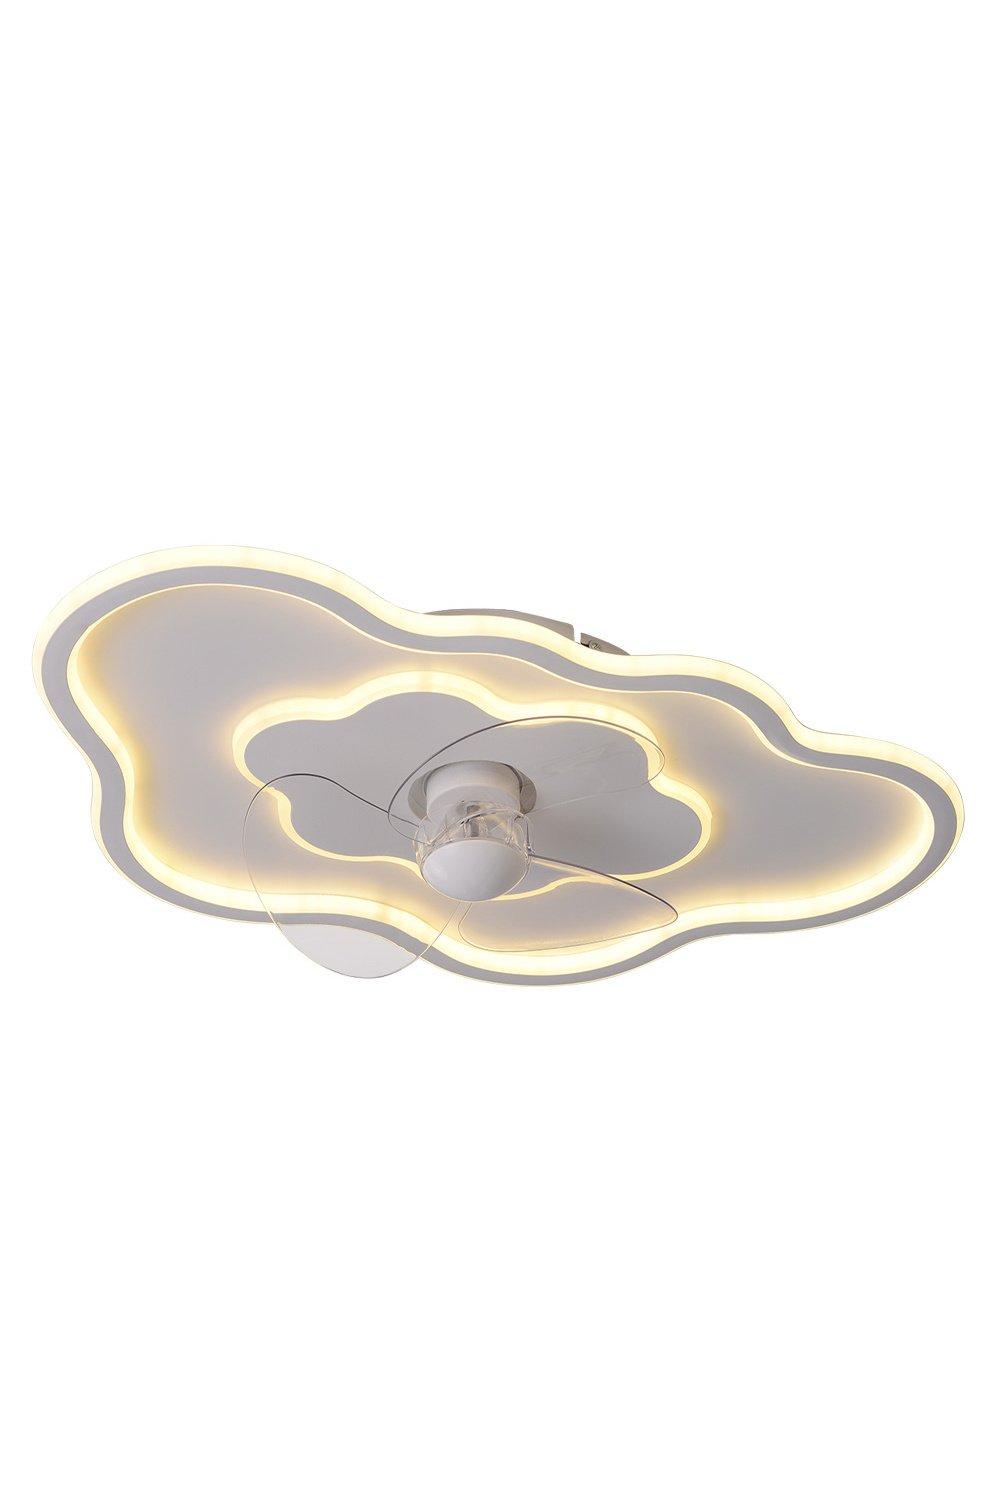 Cloud-Shaped Ceiling Mount LED Fan Light